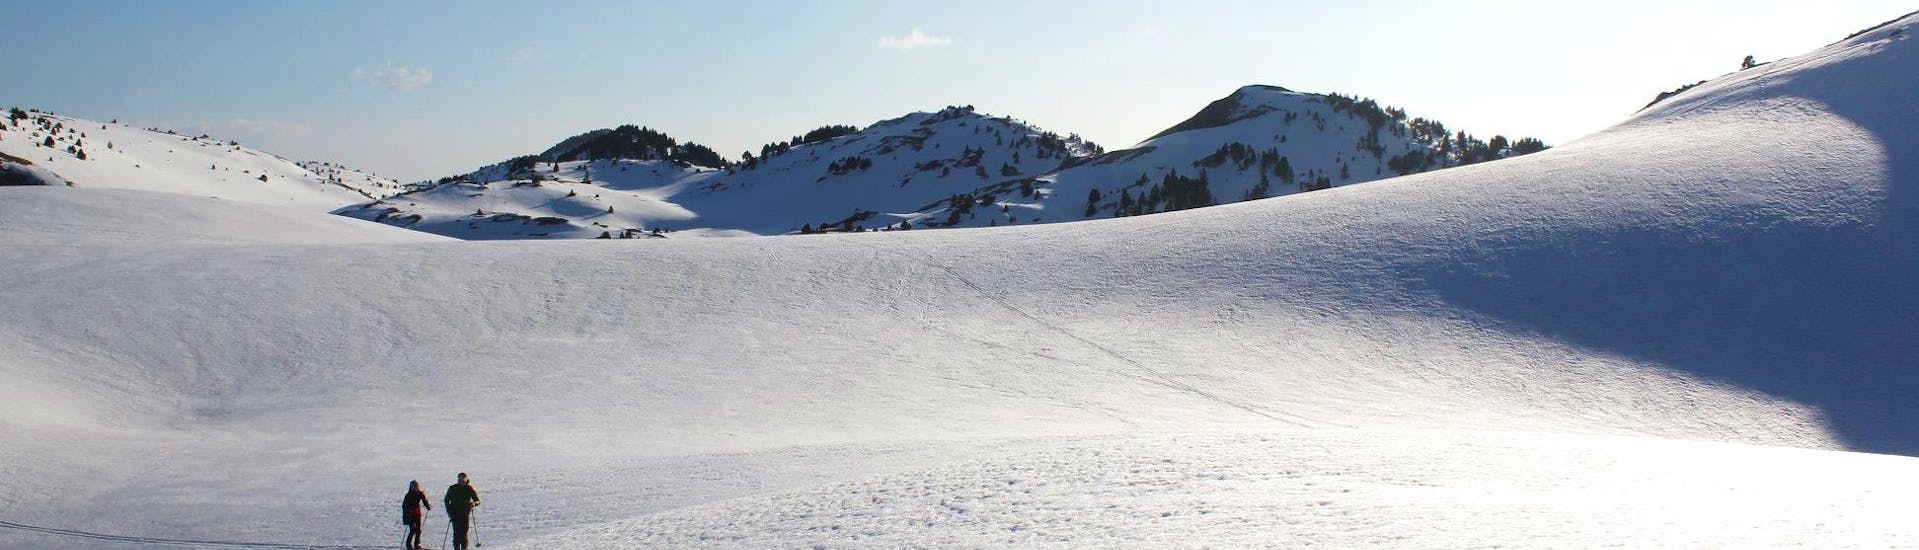 Clases de esquí de fondo a partir de 6 años para todos los niveles.